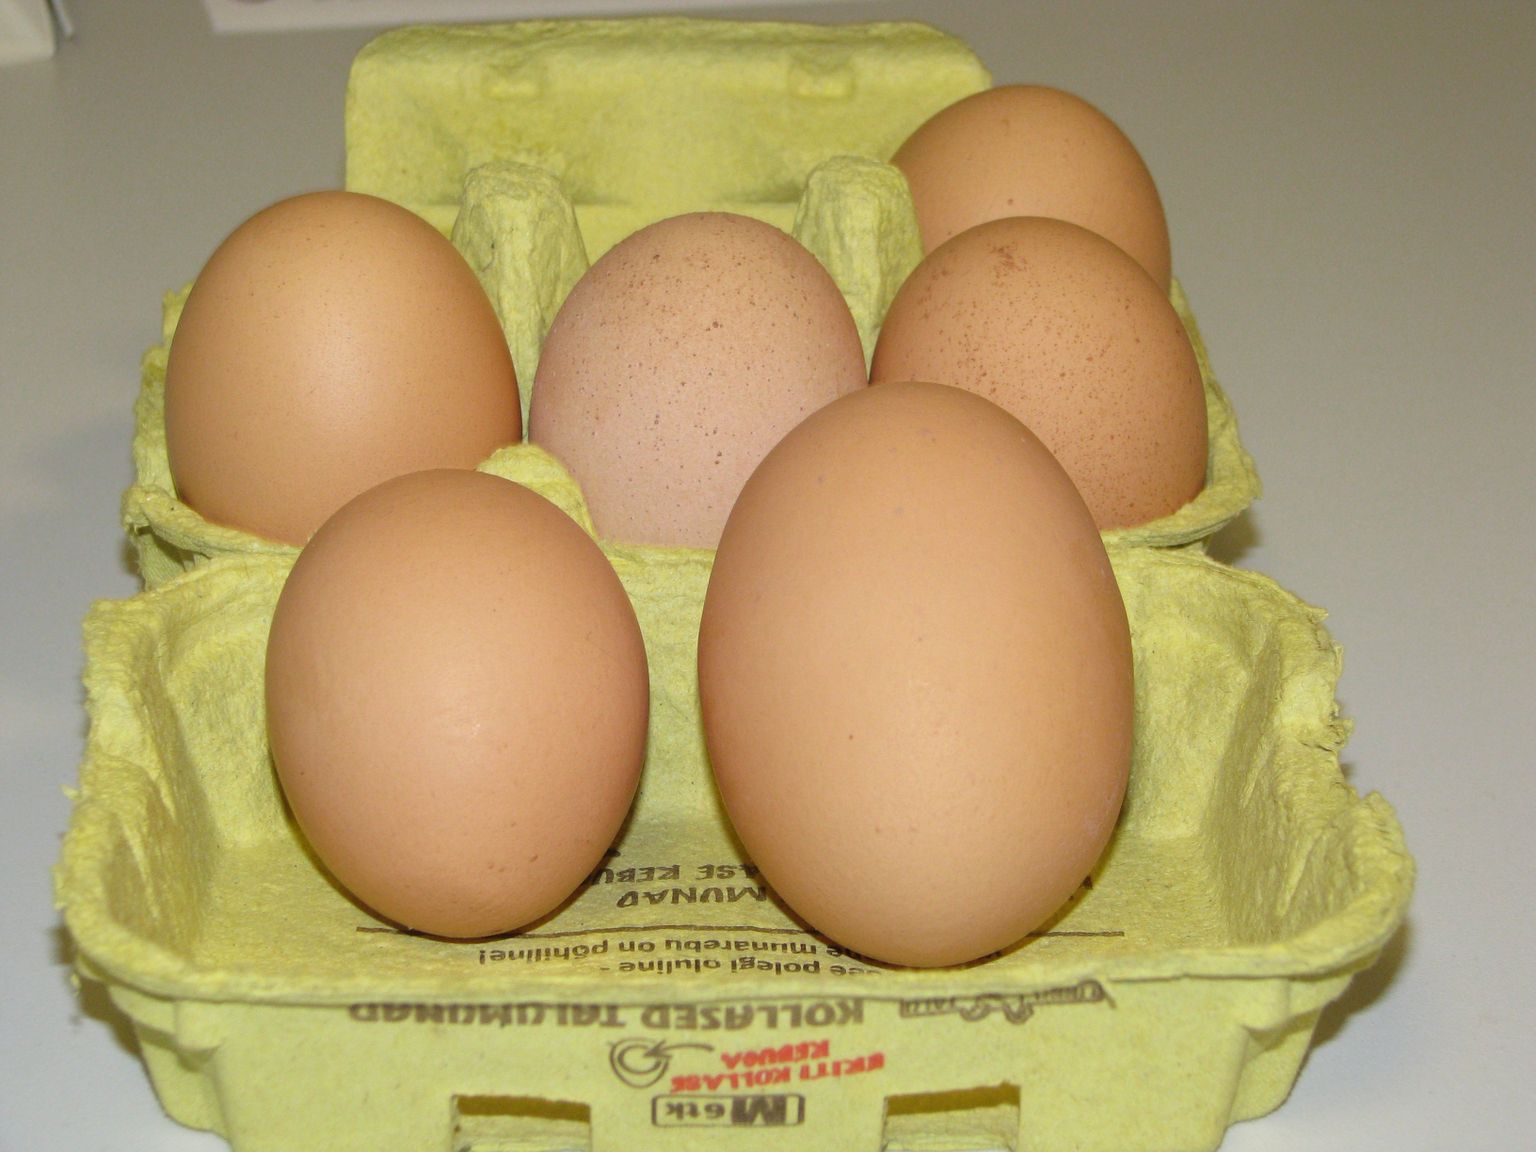 Halinga vallas munes vabapidamisel olev talukana hiigelmuna, mis on tavapärasest munast kaks korda raskem.